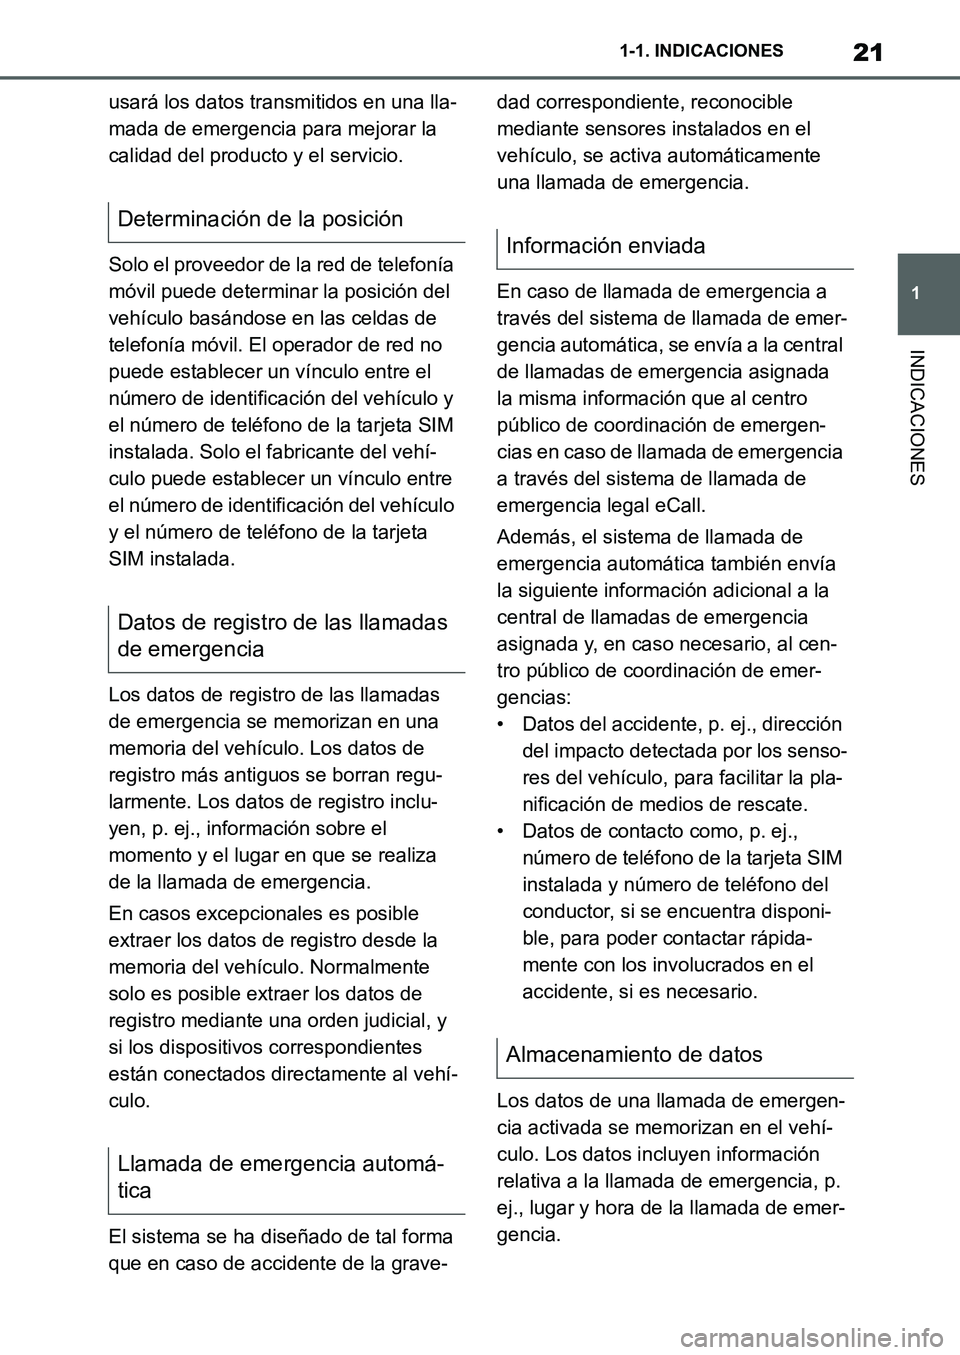 TOYOTA SUPRA 2022  Manuale de Empleo (in Spanish) 21
1 1-1. INDICACIONES
INDICACIONES
usará los datos transmitidos en una lla-
mada de emergencia para mejorar la 
calidad del producto y el servicio.
Solo el proveedor de la red de telefonía 
móvil 